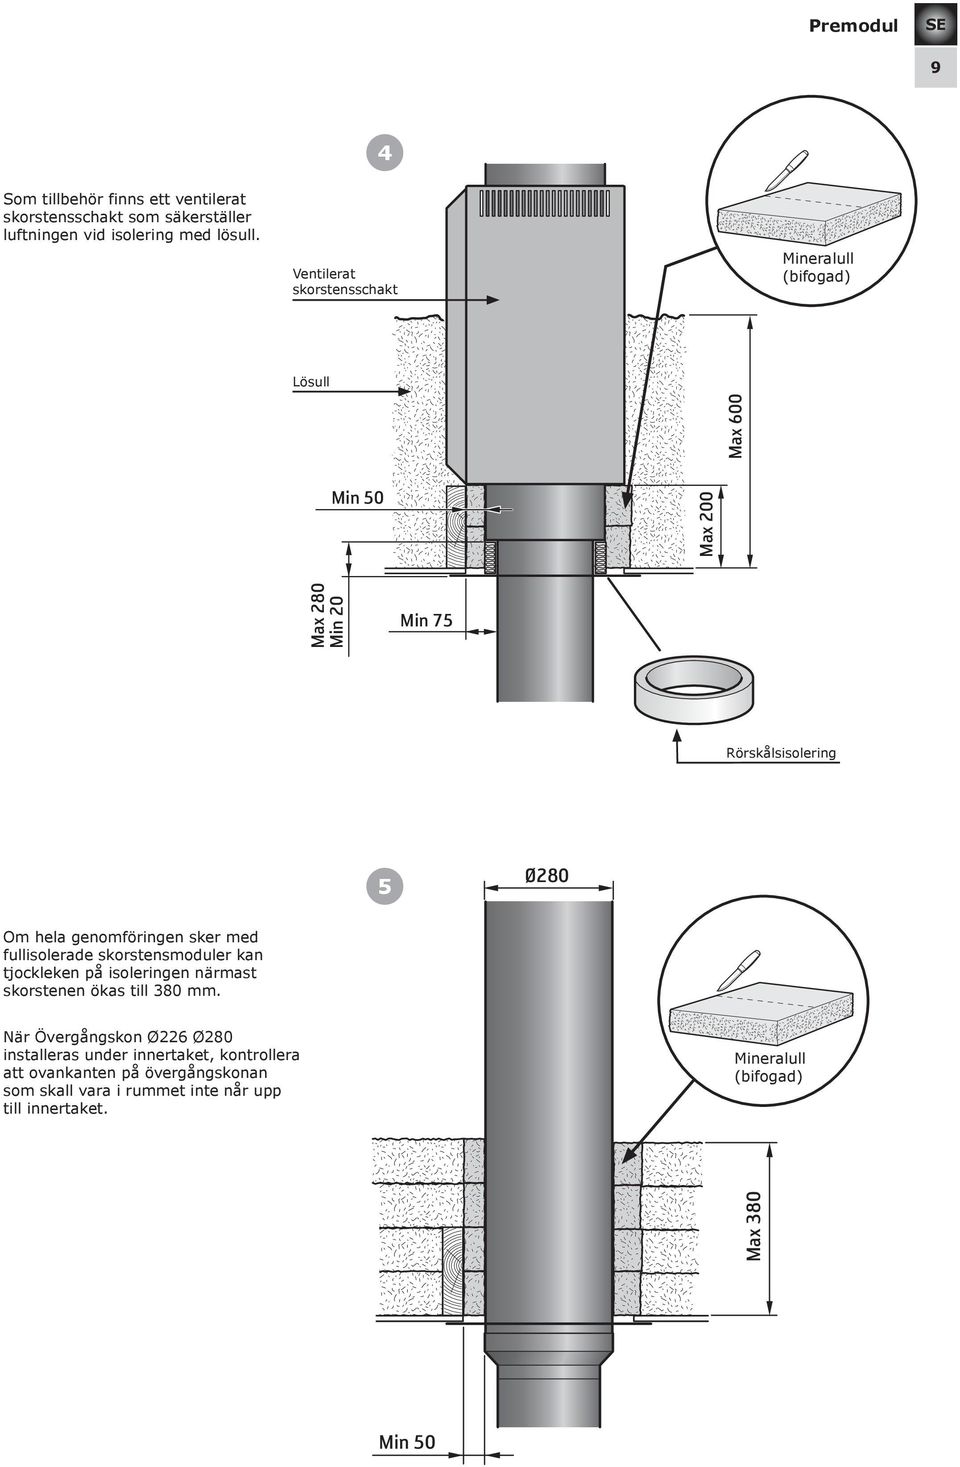 genomföringen sker med fullisolerade skorstensmoduler kan tjockleken på isoleringen närmast skorstenen ökas till 380 mm.